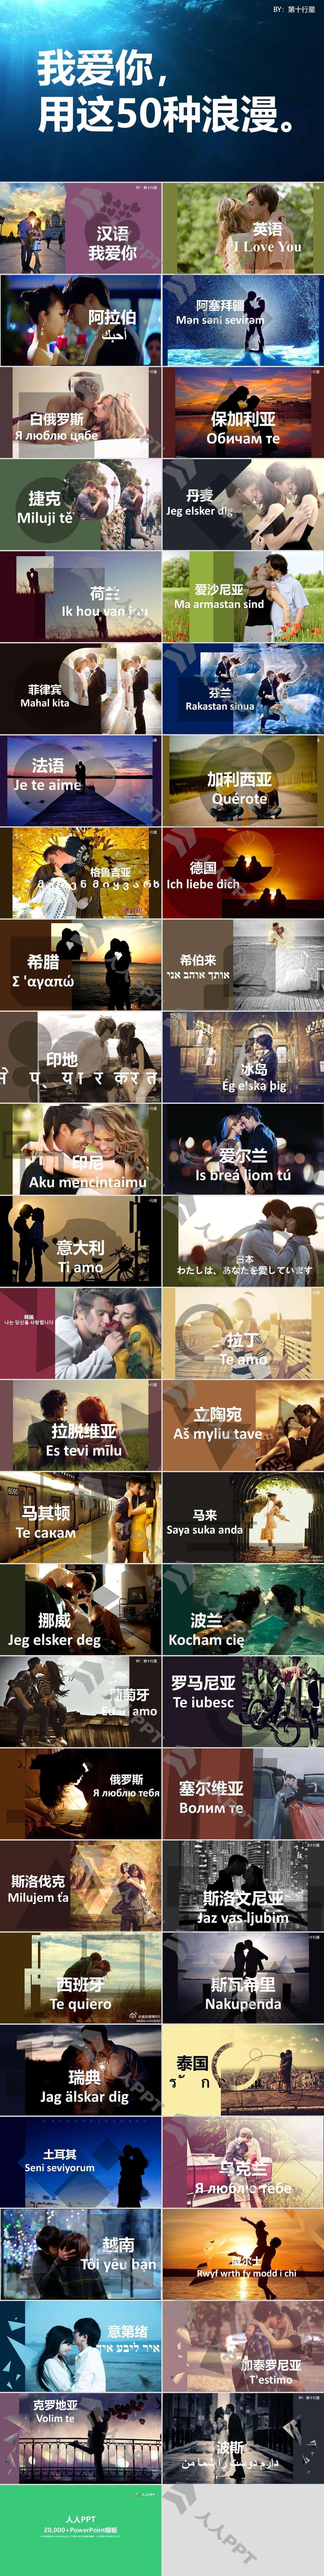 用50种国际语言说我爱你――情人节浪漫告白PPT模板长图